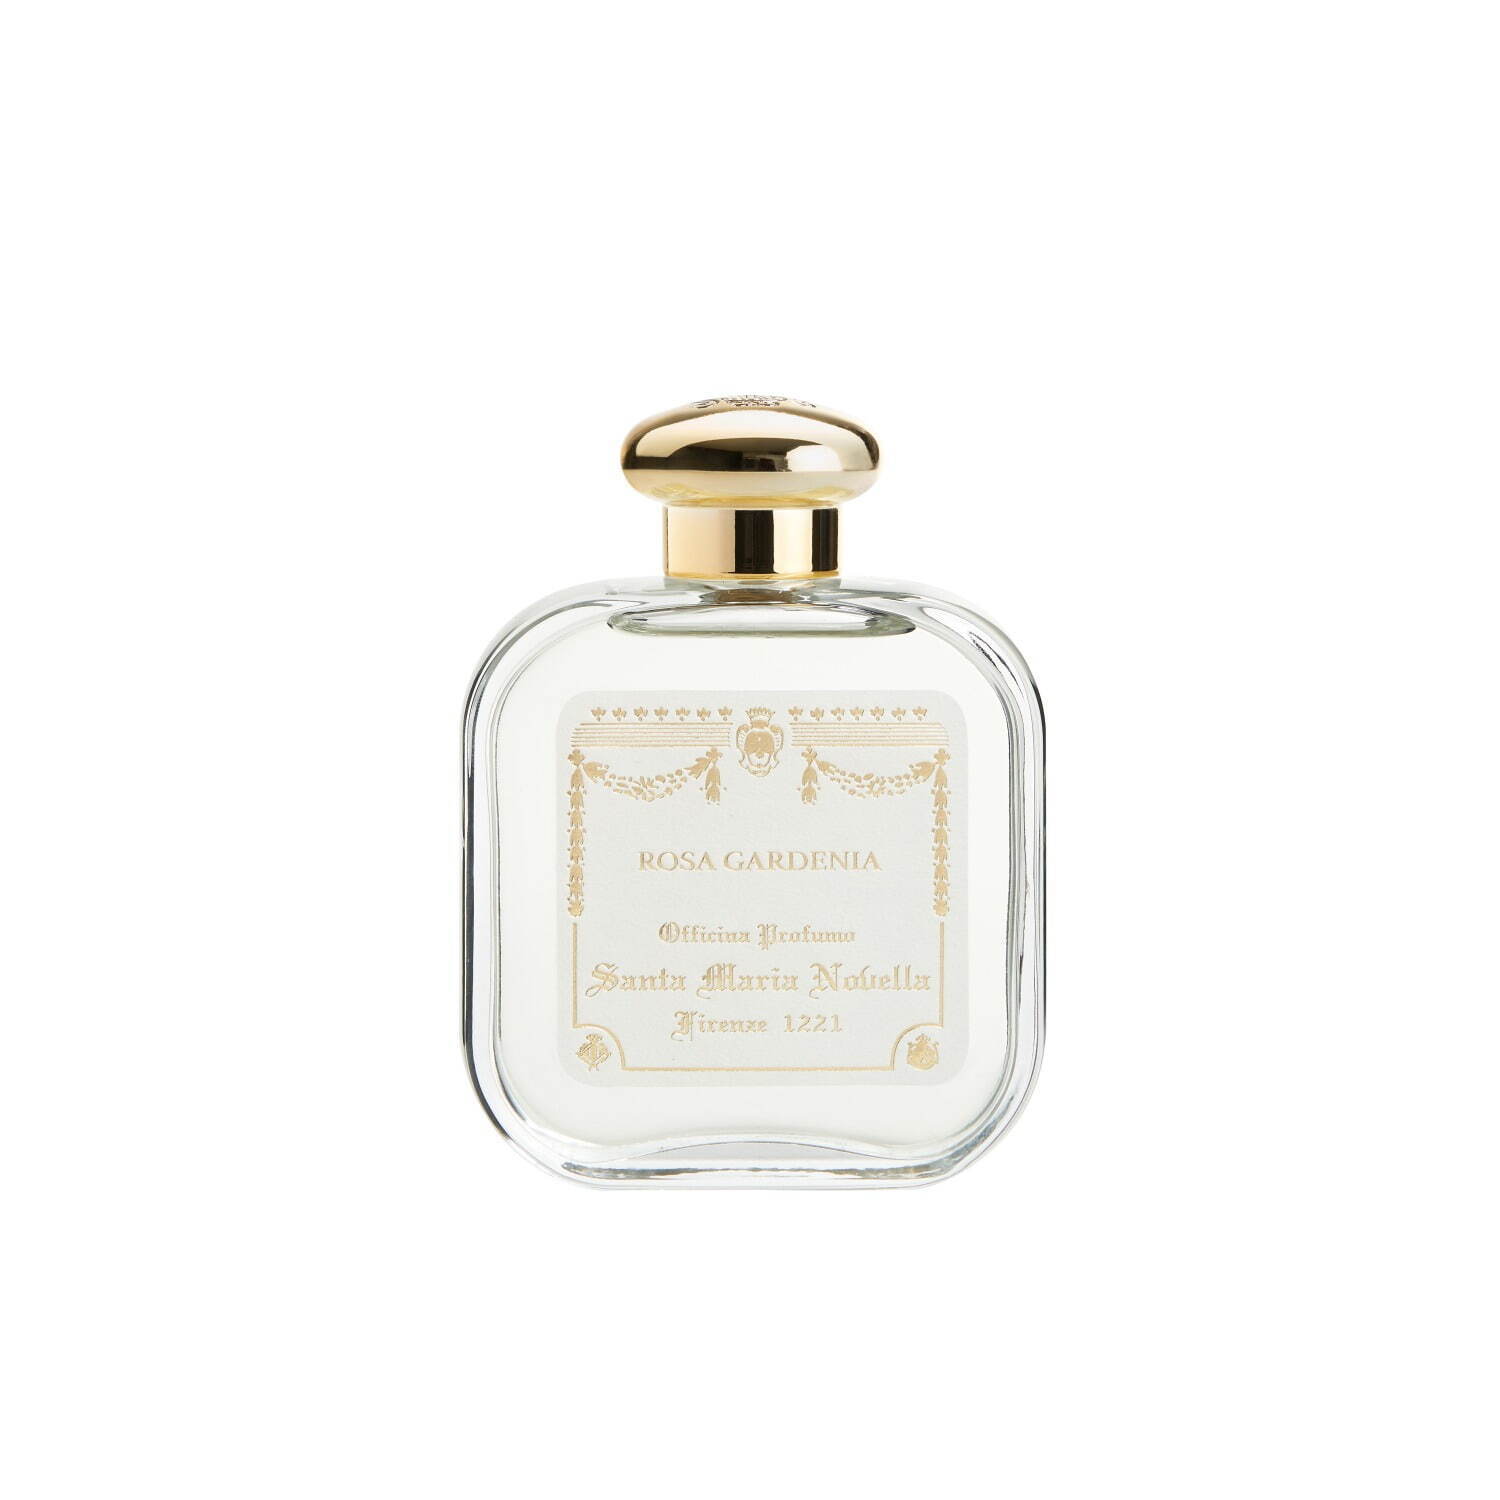 サンタ・マリア・ノヴェッラの香水特集、世界最古の薬局で生まれた